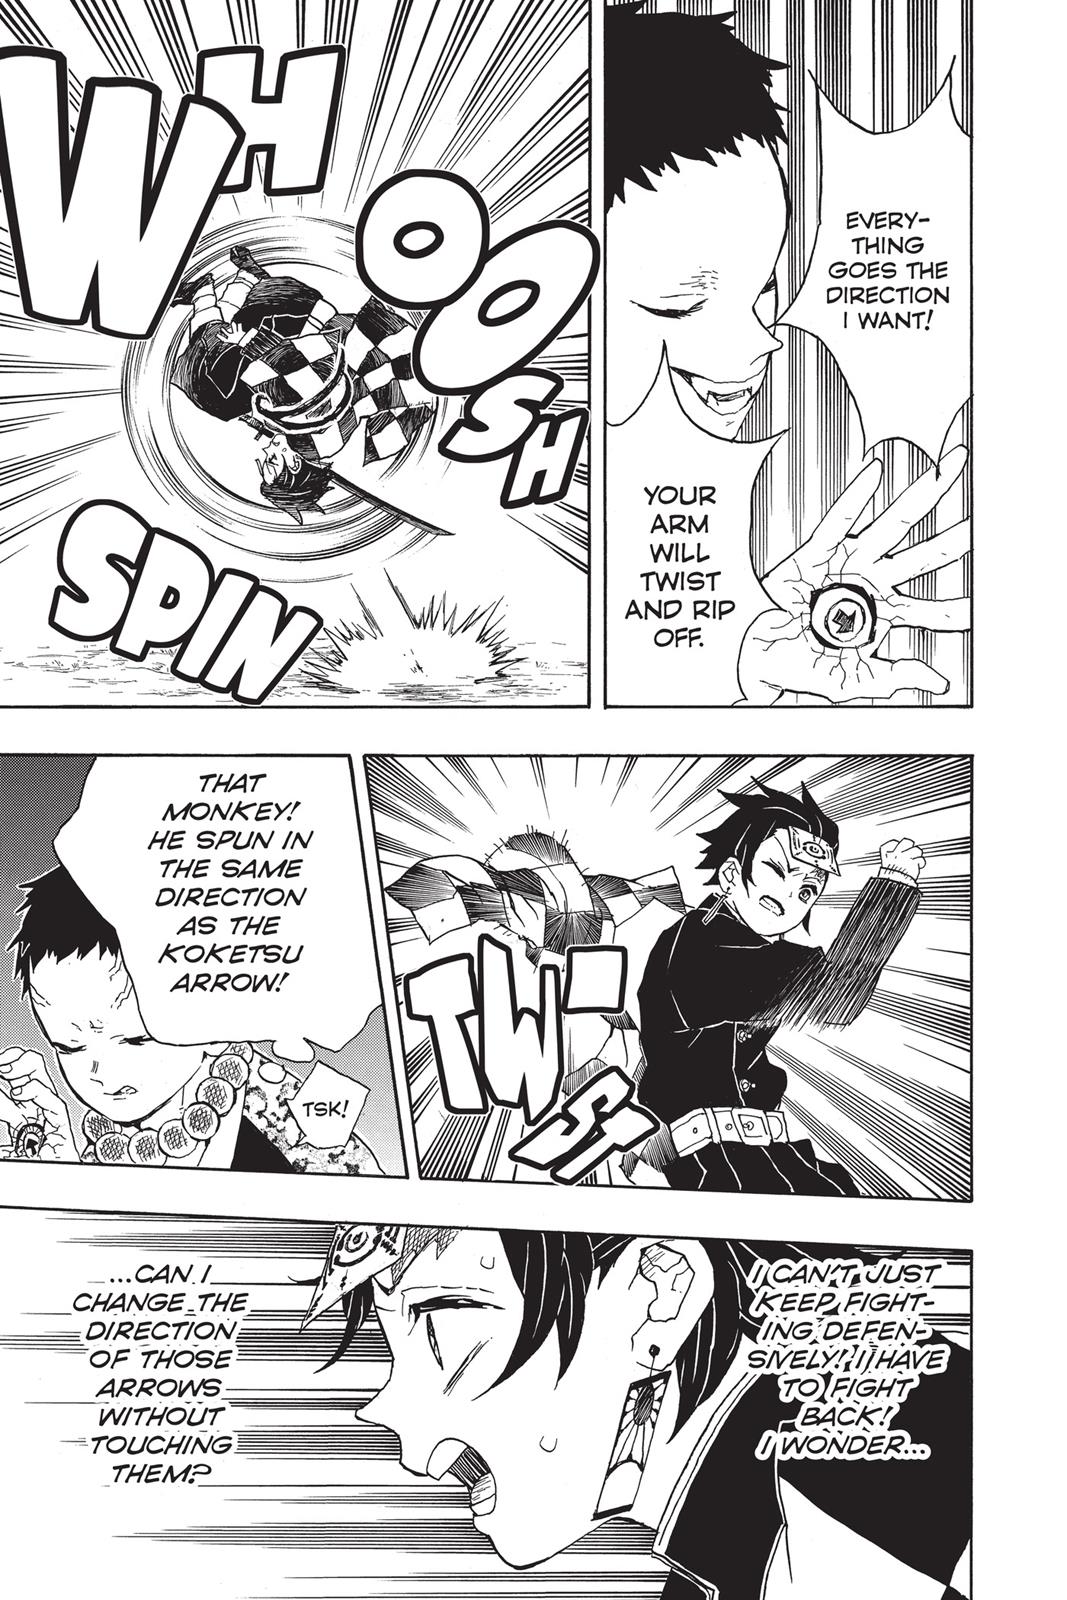 Demon Slayer Manga Manga Chapter - 17 - image 19